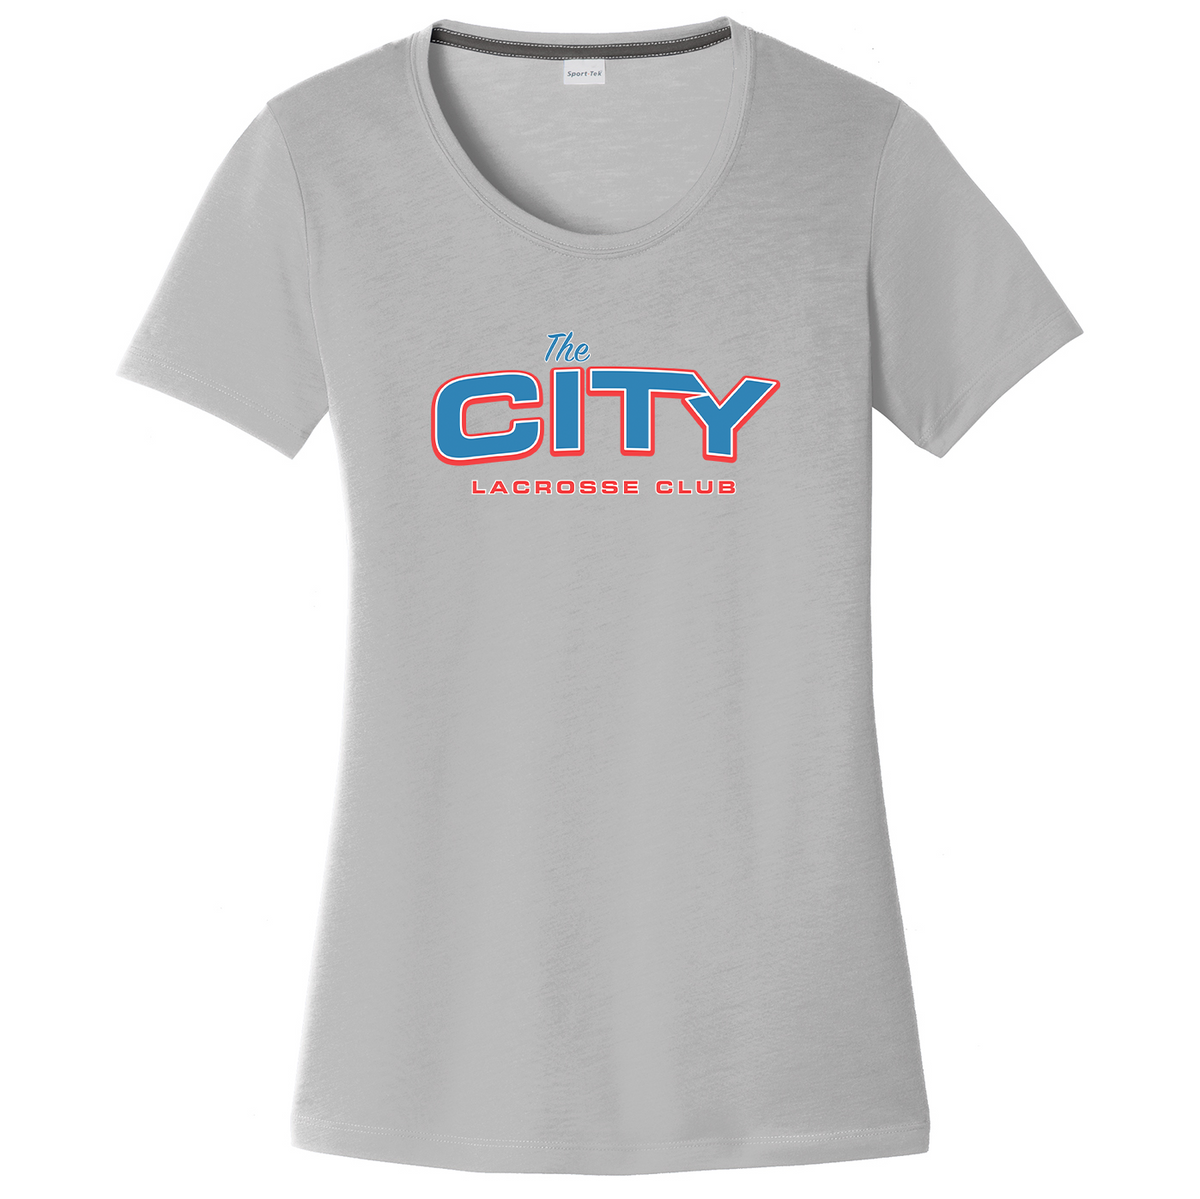 OKC Lacrosse Club Women's CottonTouch Performance T-Shirt